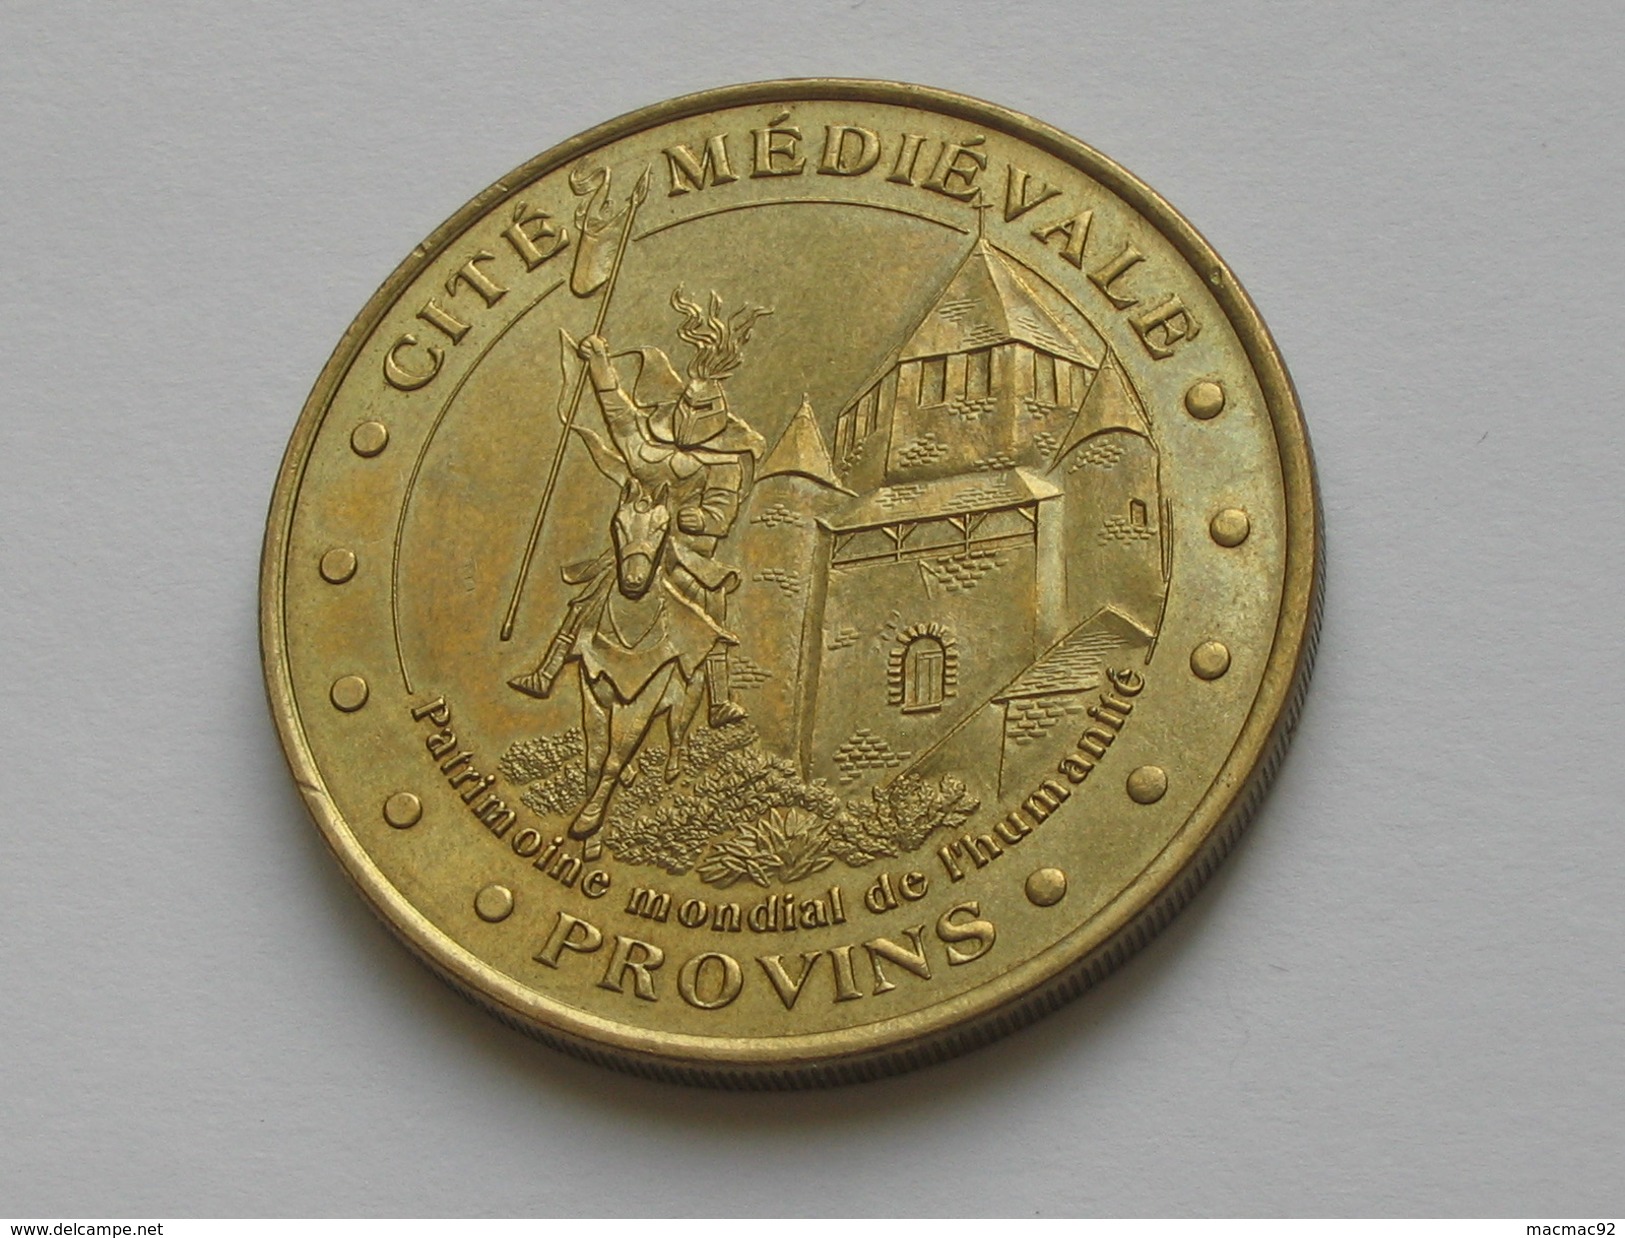 Monnaie De Paris  - Cité Médiévale De PROVINS 2002  **** EN ACHAT IMMEDIAT  **** - 2002